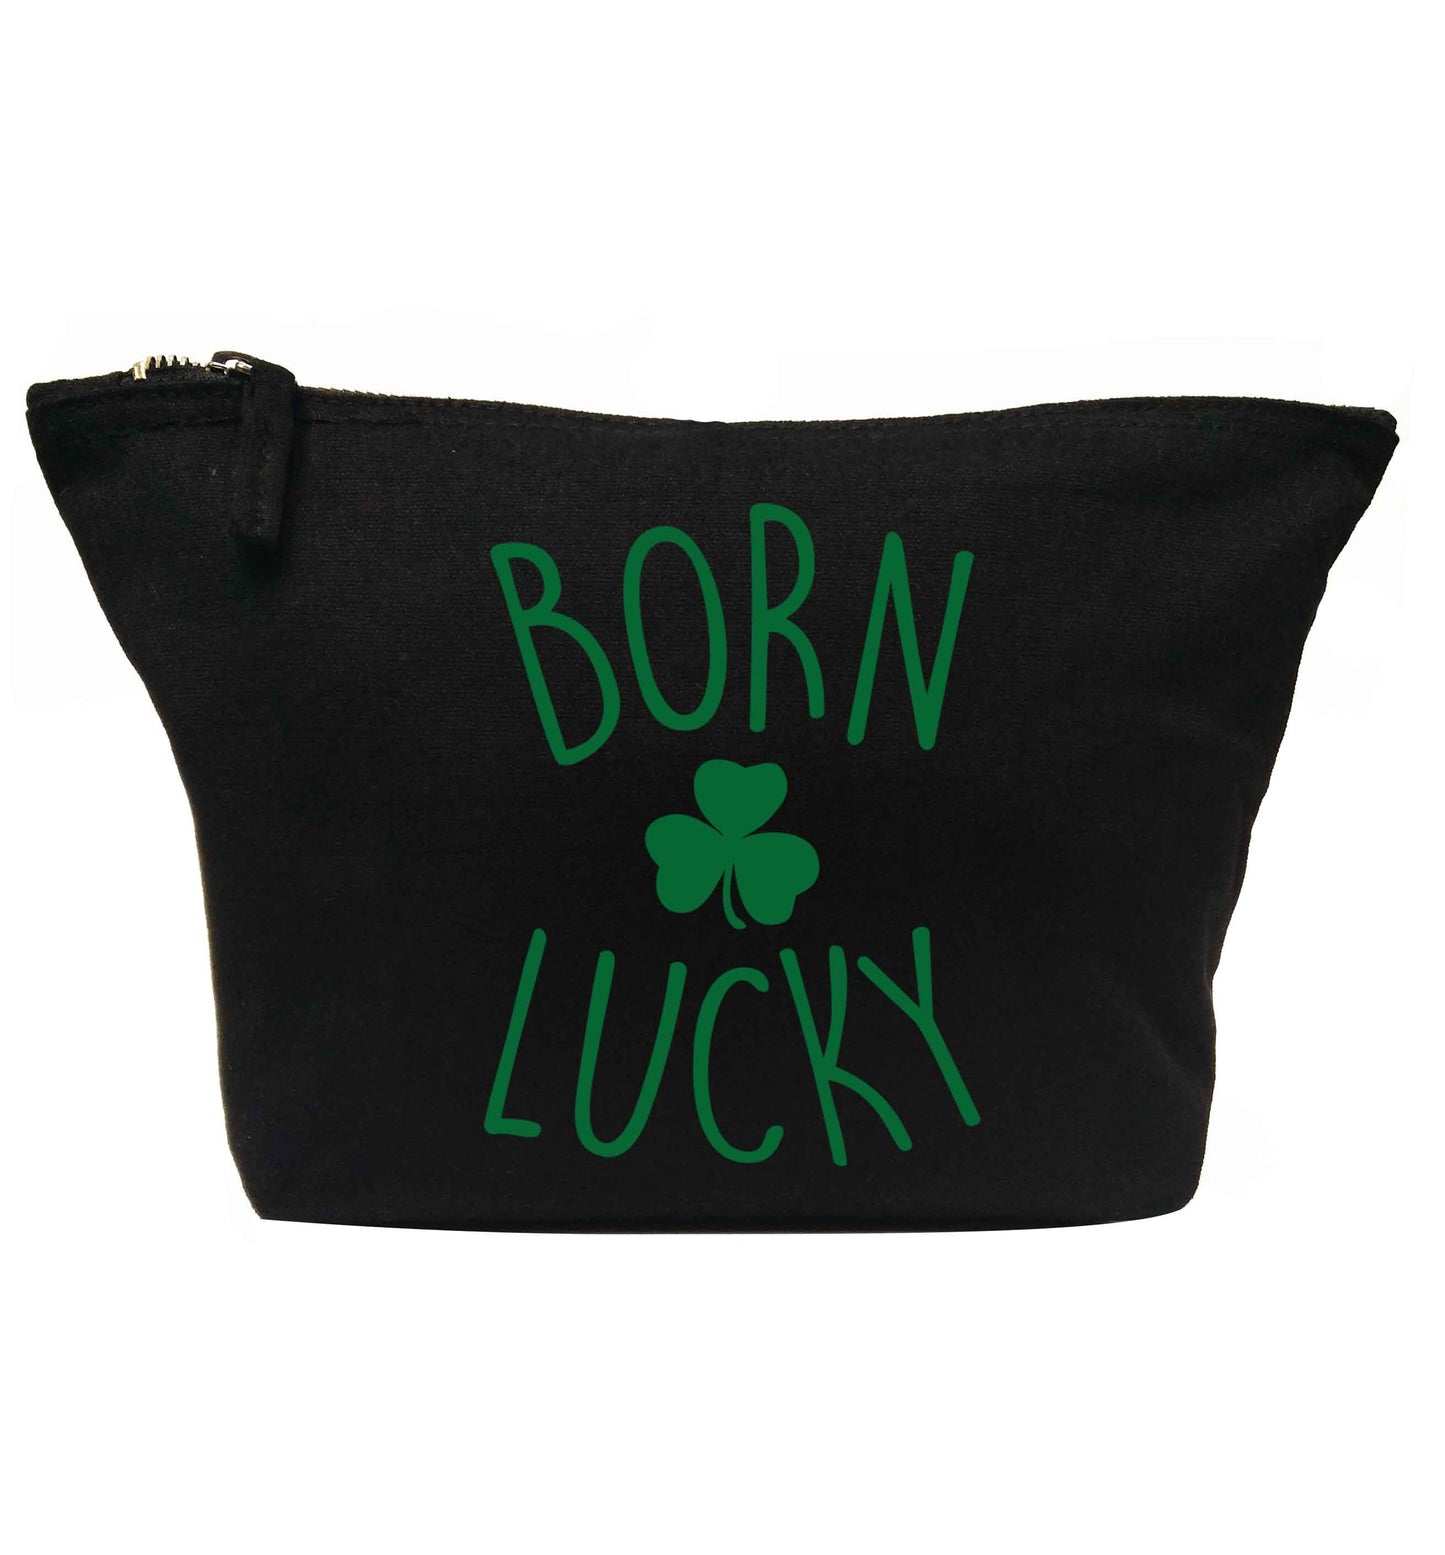 Born Lucky | Makeup / wash bag